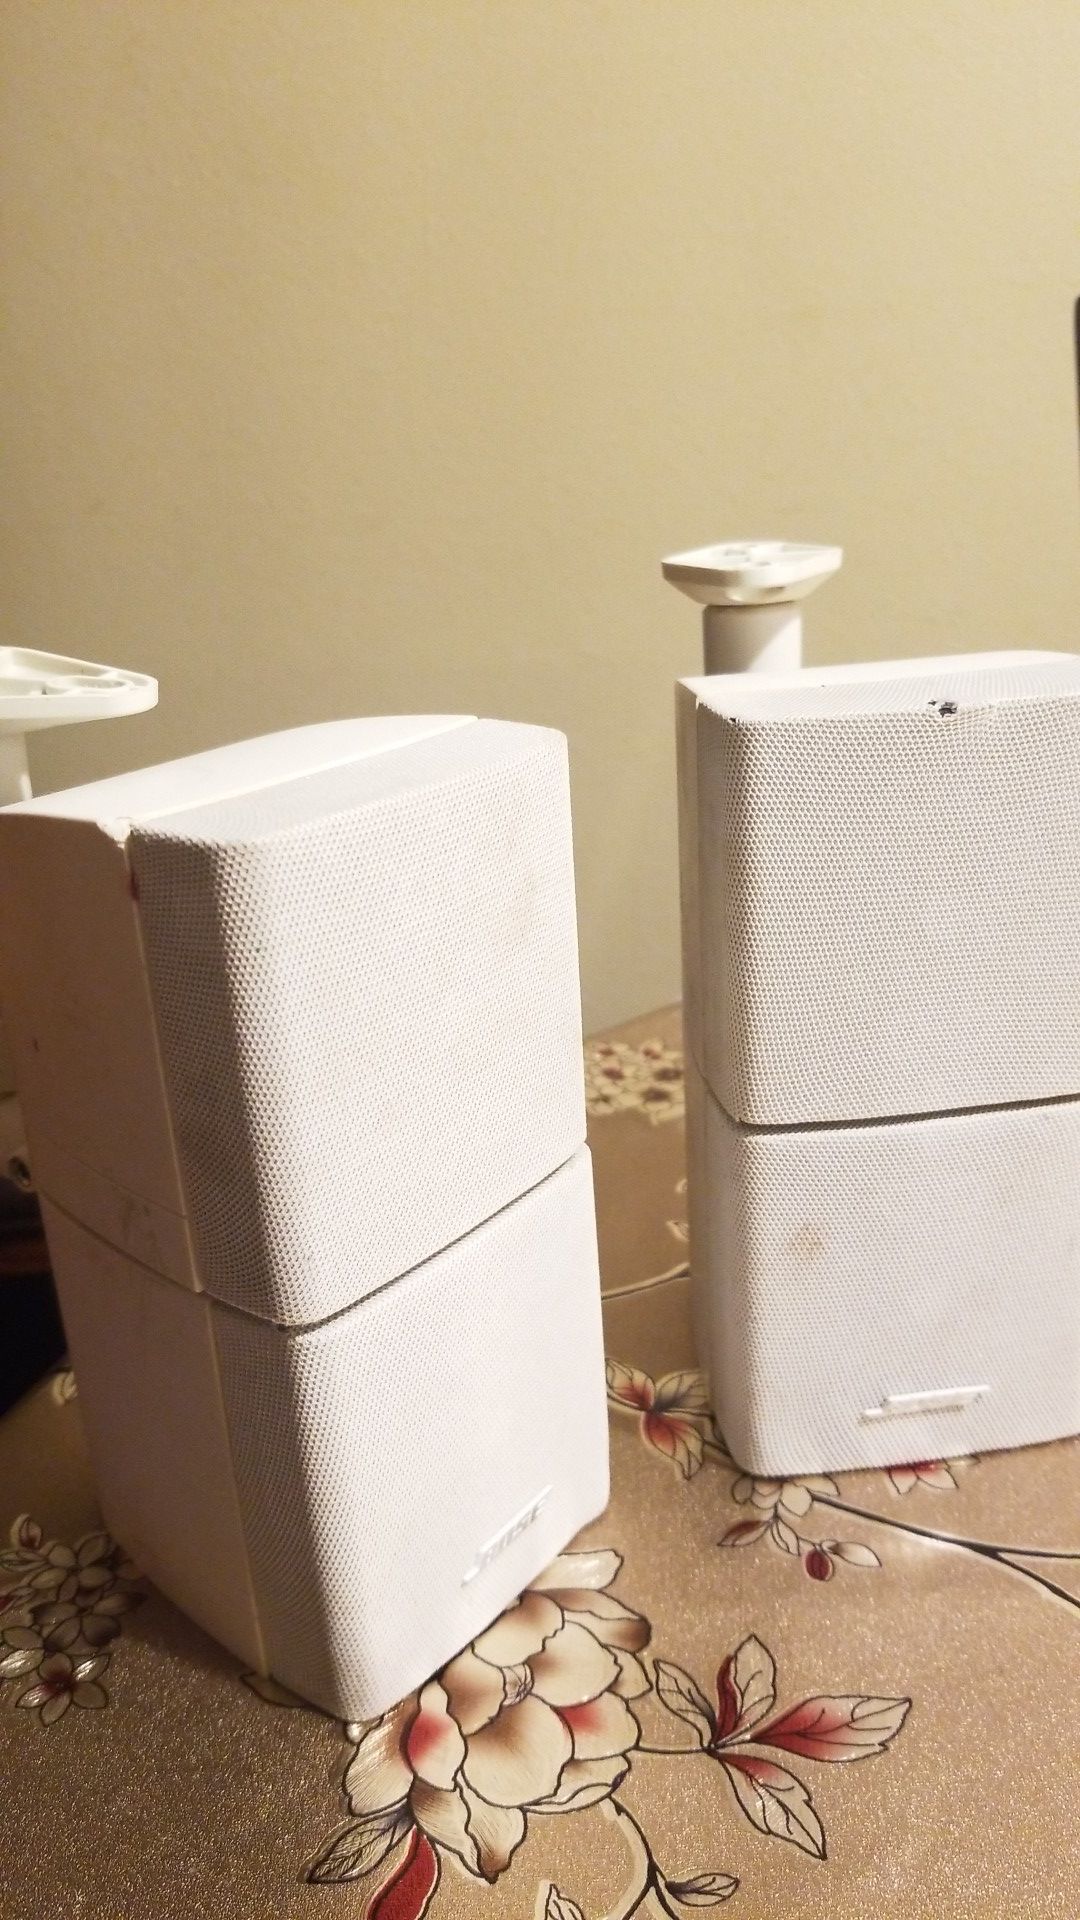 2-bose speakers